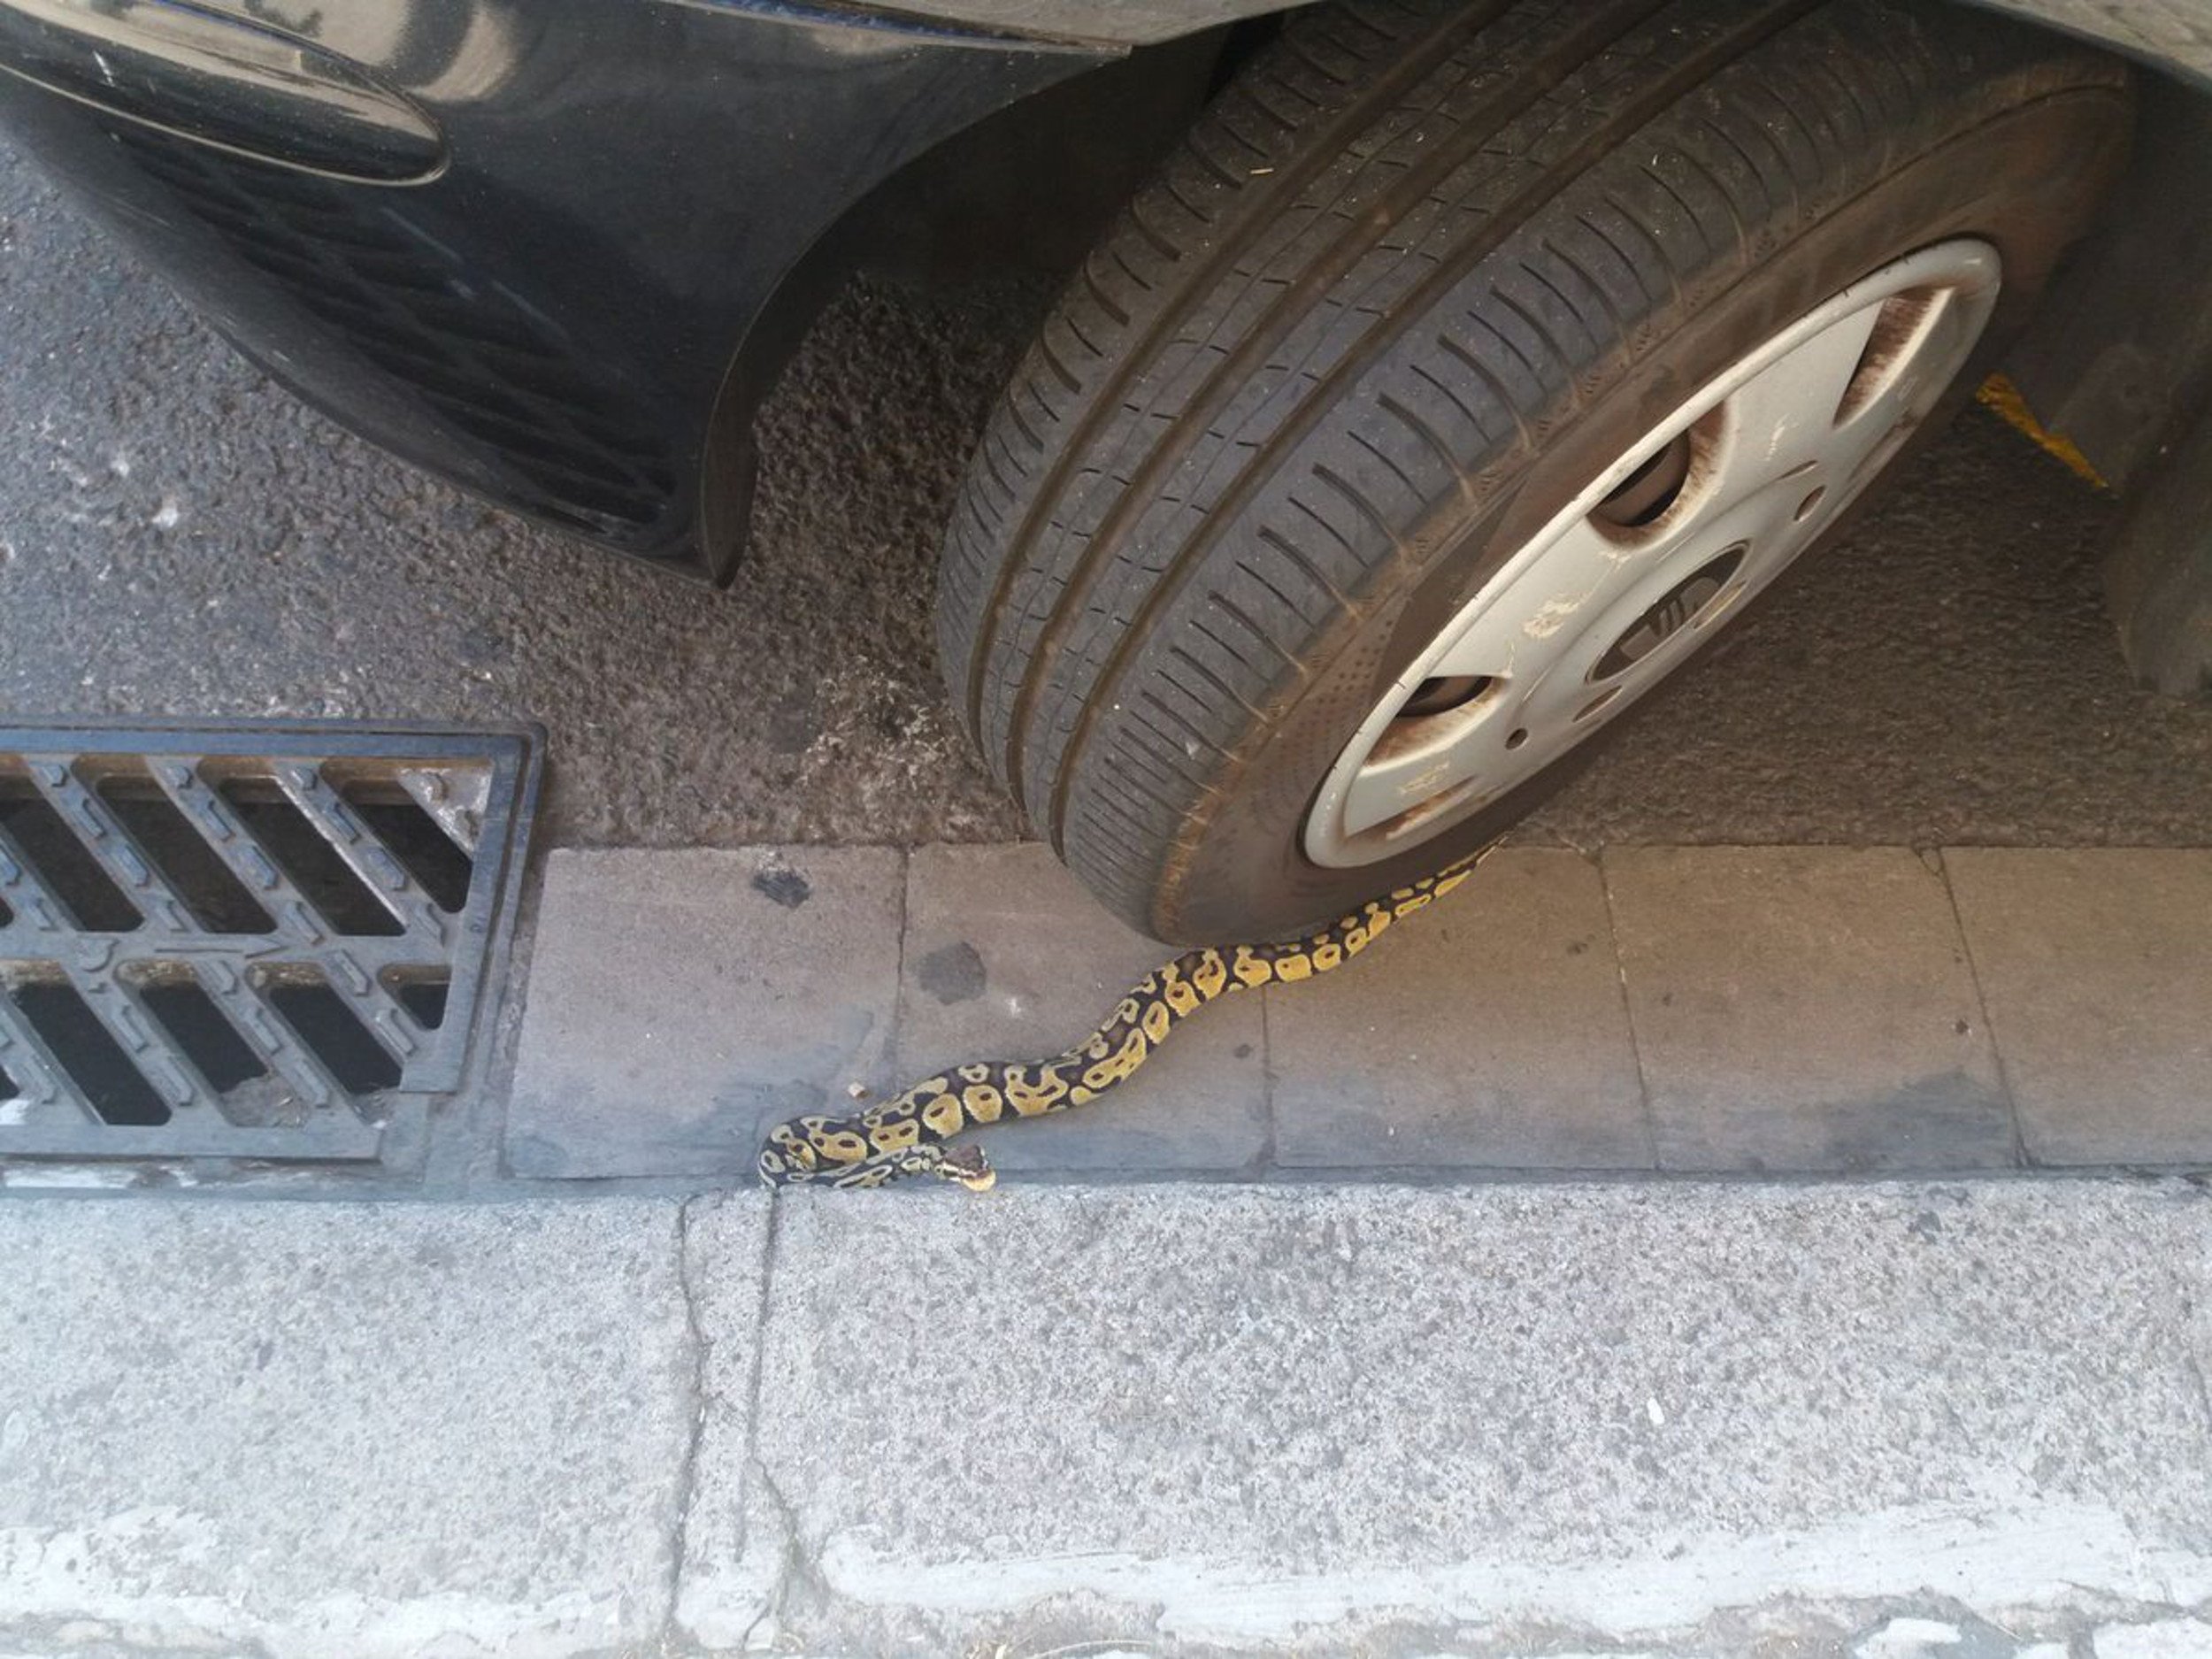 Encuentran una serpiente pitón bajo un coche en Barcelona